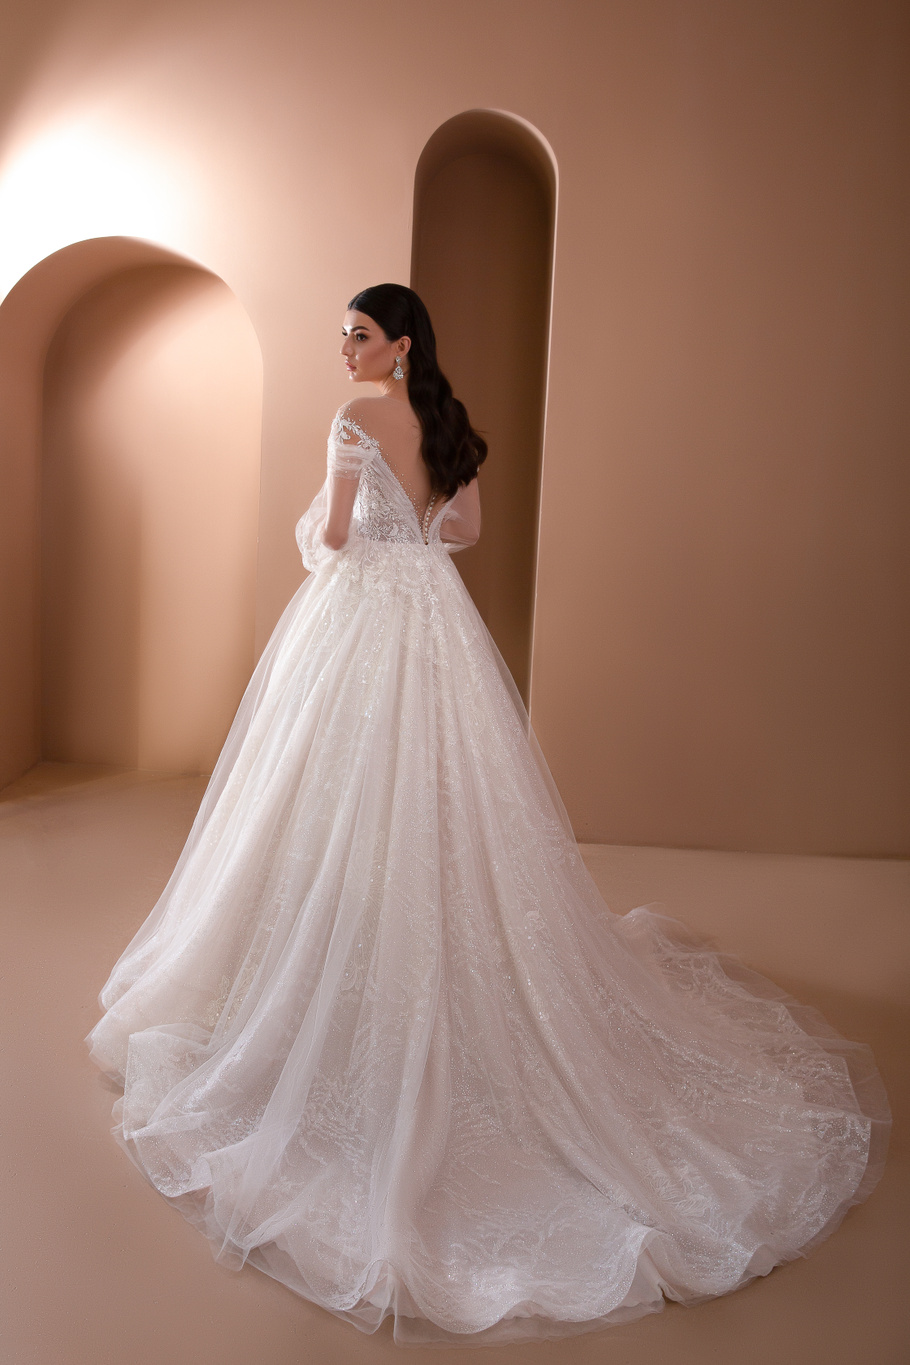 Купить свадебное платье Эредхел Армония из коллекции 2021 года в салоне «Мэри Трюфель»